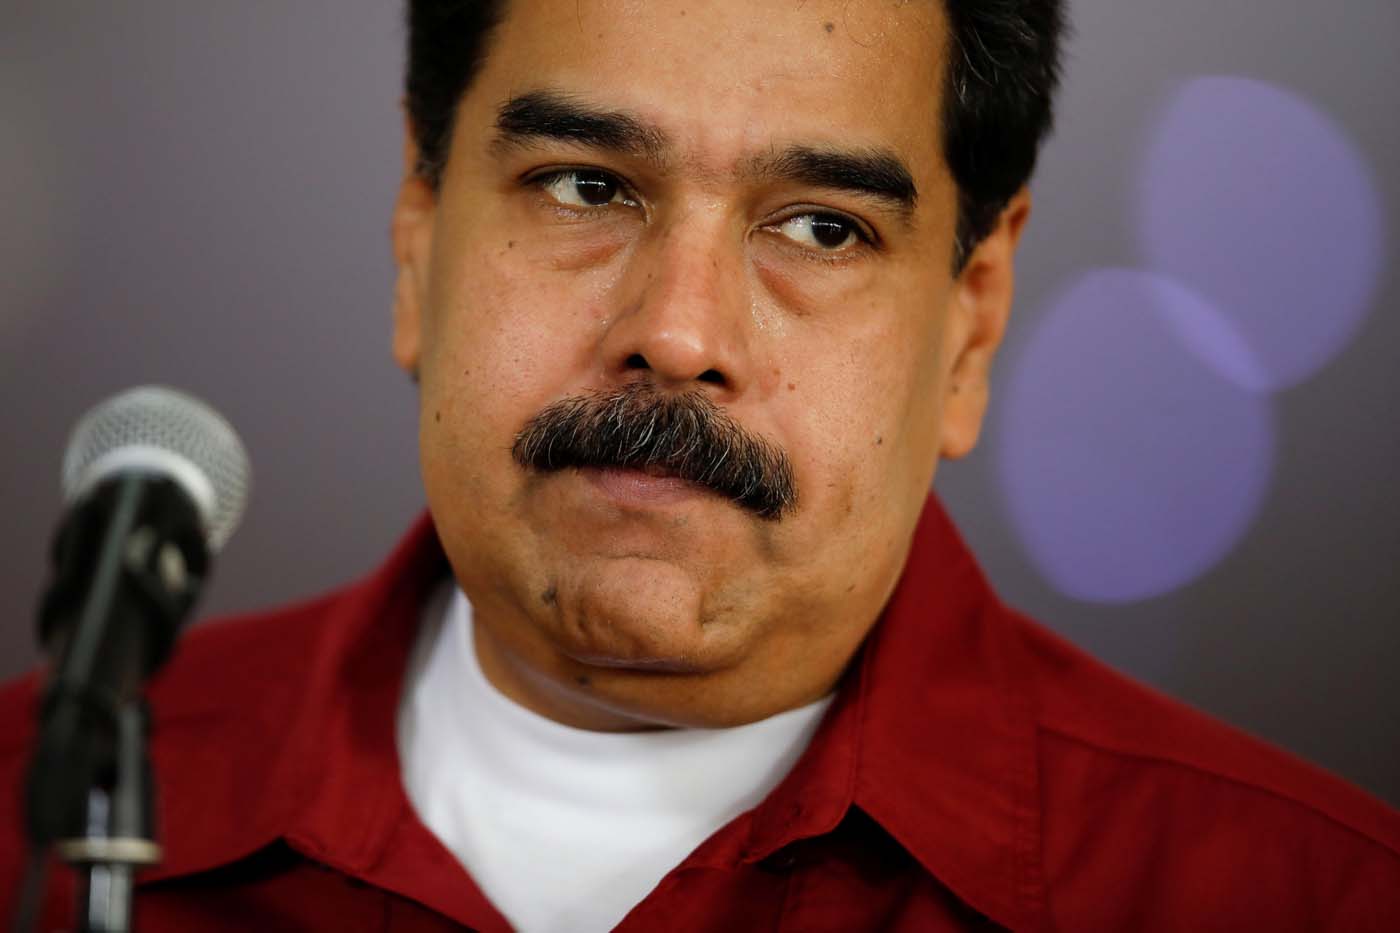 Moisés Naím desmonta, una a una, las afirmaciones del artículo de Nicolás Maduro en El País